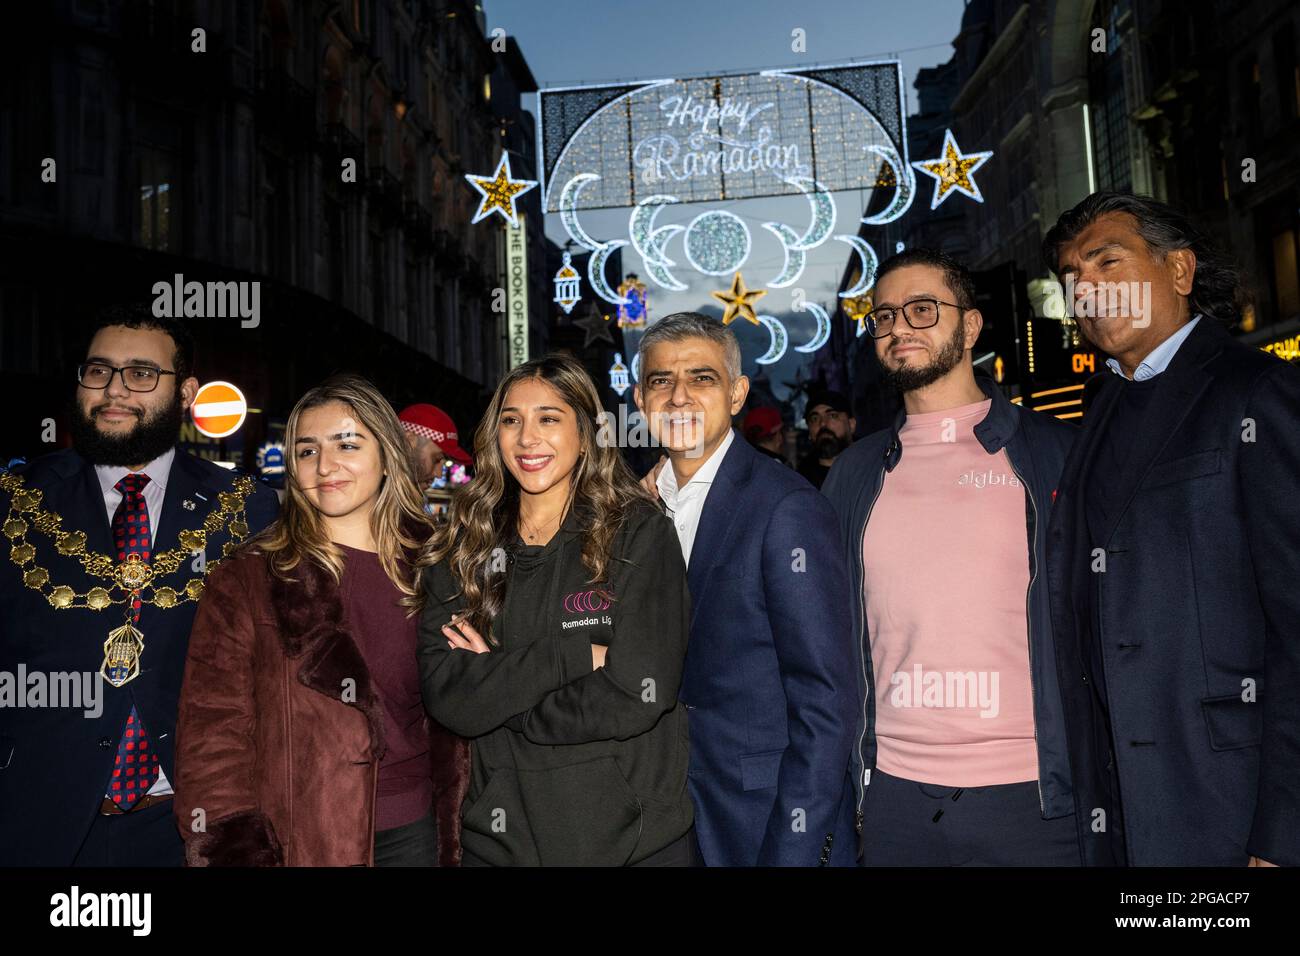 Londres, Royaume-Uni. 21 mars 2023. (L) Conseiller Hamza Taouzzale, Lord Mayor of Westminster, (2L) Ros Morgan, PDG de Heart of London Business Alliance, (3L) Aisha Desai, fondateur de Ramadan Lights, Et (C) Sadiq Khan, maire de Londres, au début de la première installation de lumières du Ramadan à Piccadilly Circus à la veille du premier jour du Ramadan 2023. Les lumières de cette échelle sont une première au Royaume-Uni et en Europe, avec 30 000 lumières durables illuminées dans le centre de Londres pendant tout le mois du Ramadan. Credit: Stephen Chung / Alamy Live News Banque D'Images